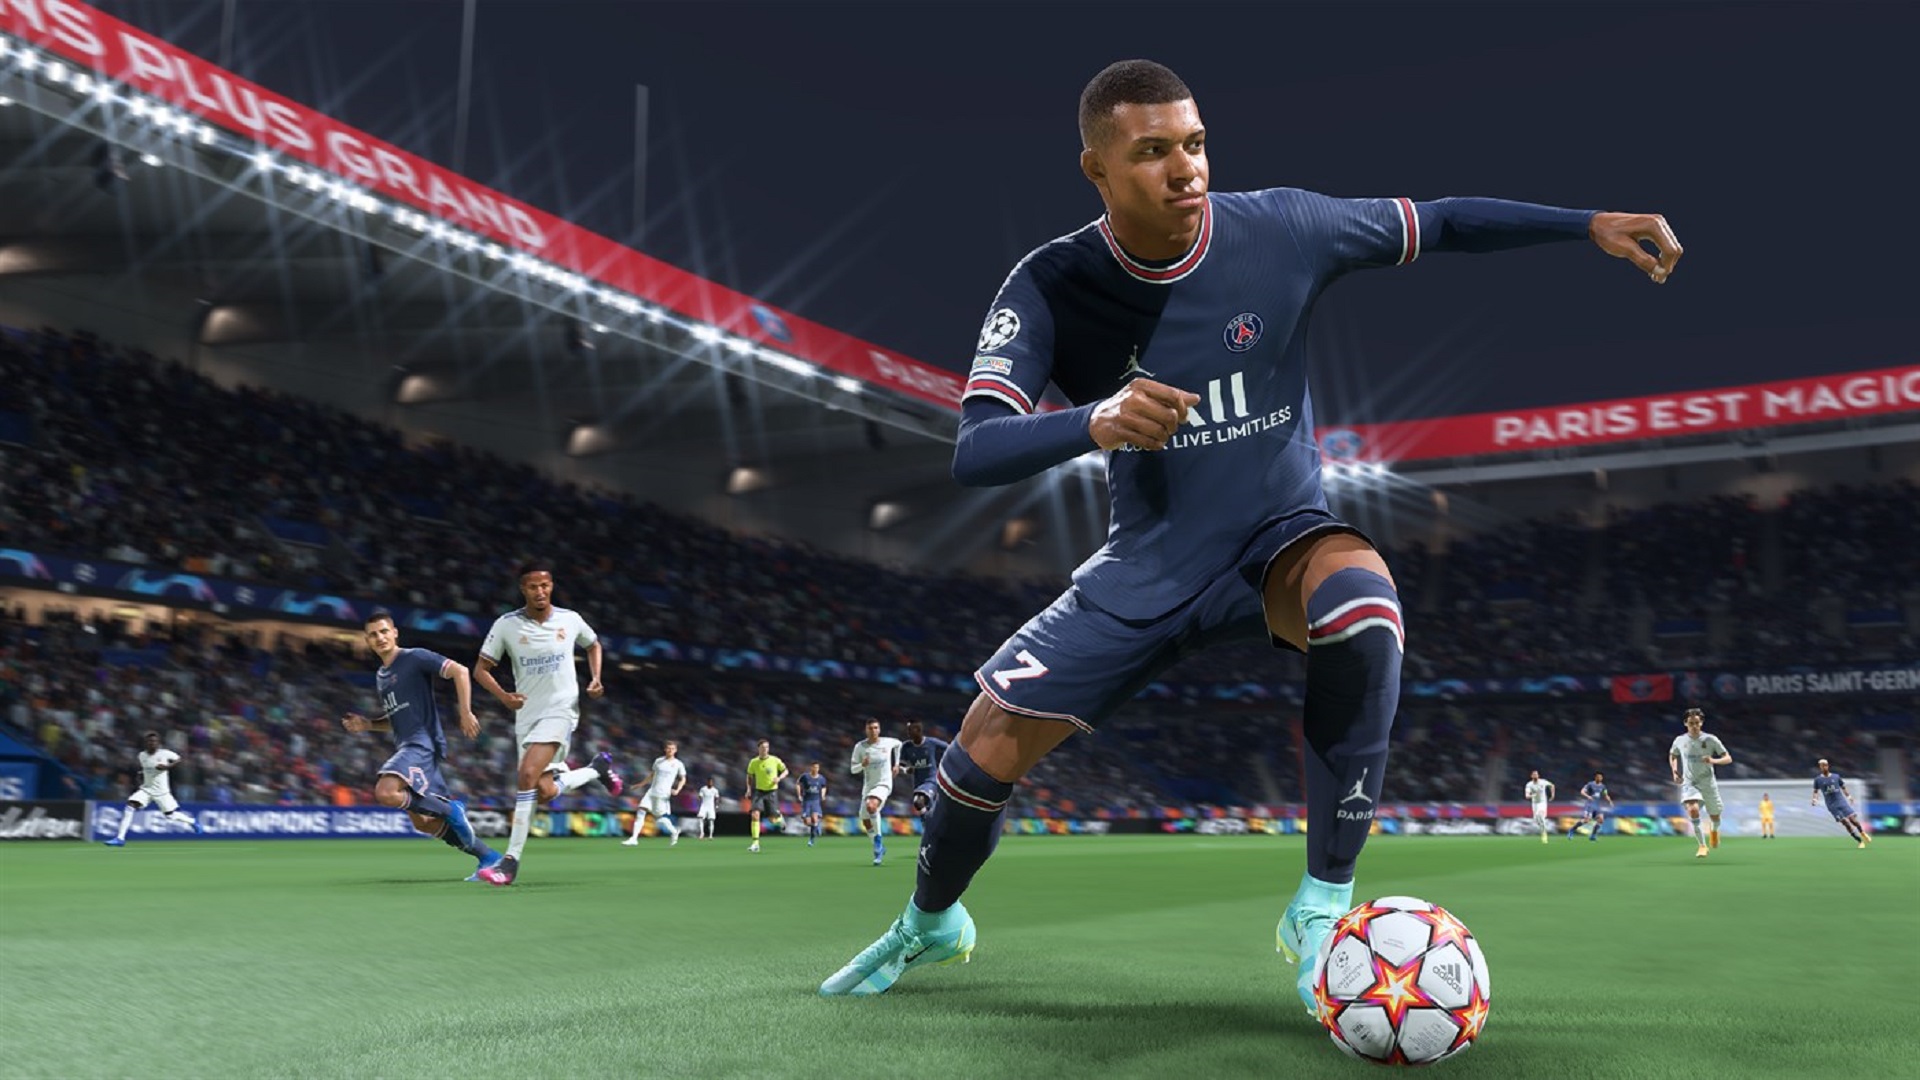 جدول فروش هفتگی انگلستان: صدرنشینی FIFA 22 در هفته اول انتشار